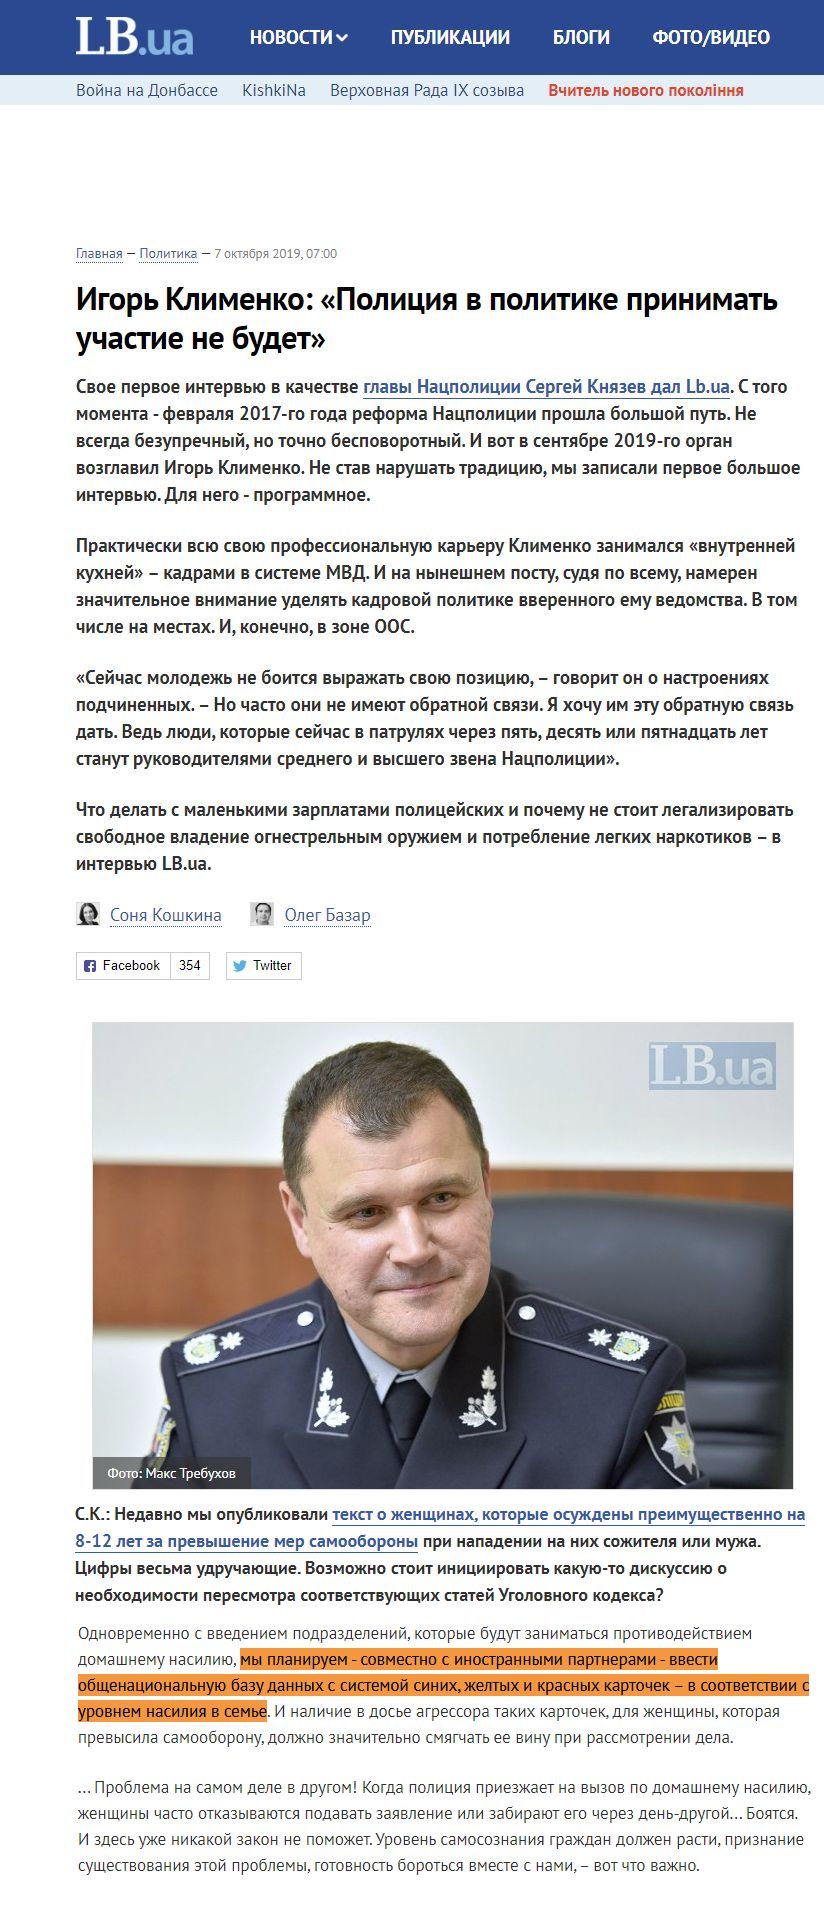 https://lb.ua/news/2019/10/07/439088_igor_klimenko_politsiya_politike.html